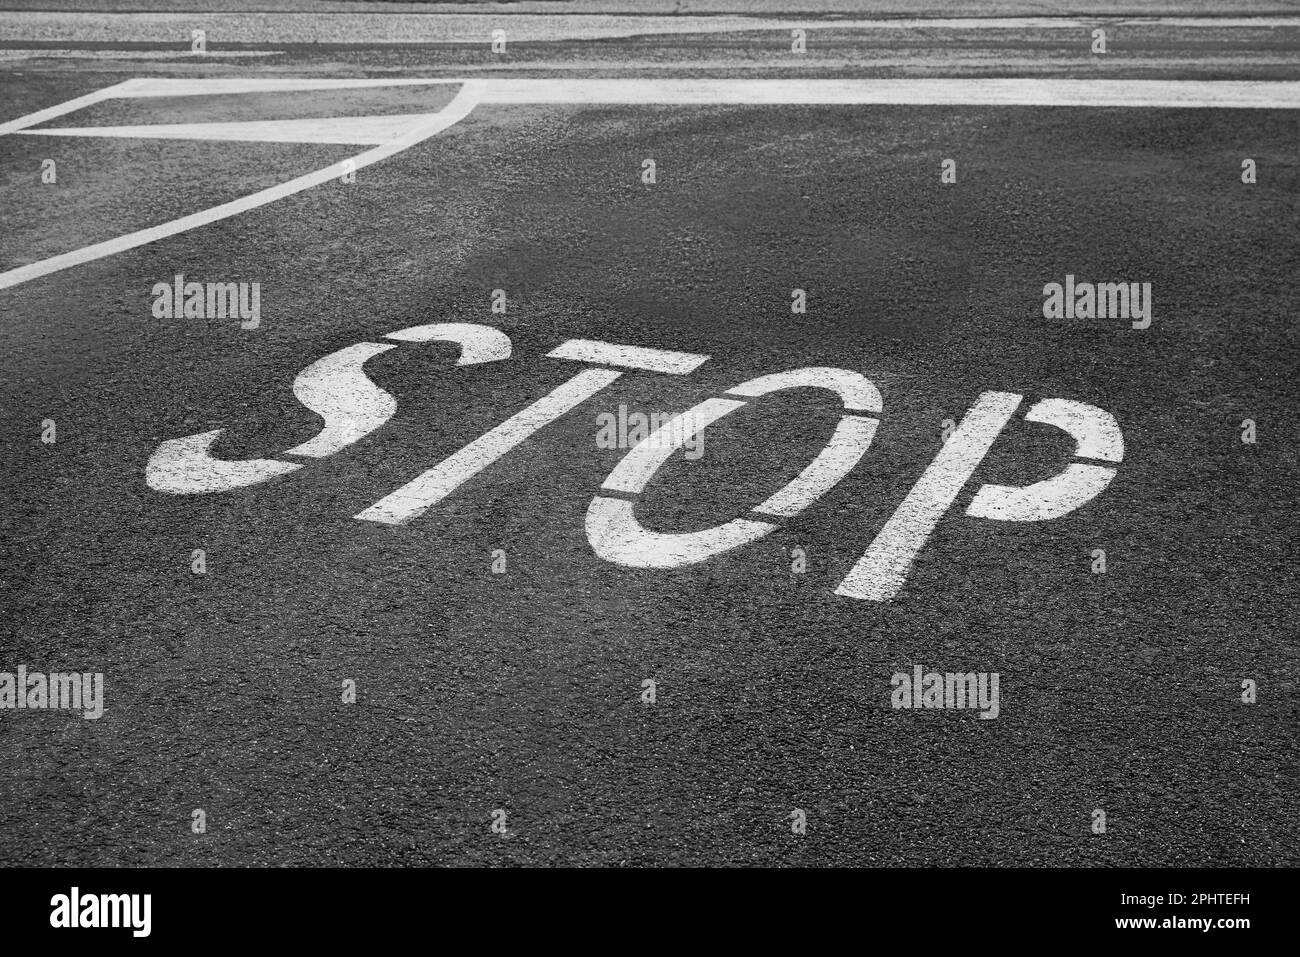 White sign STOP written on asphalt road Stock Photo